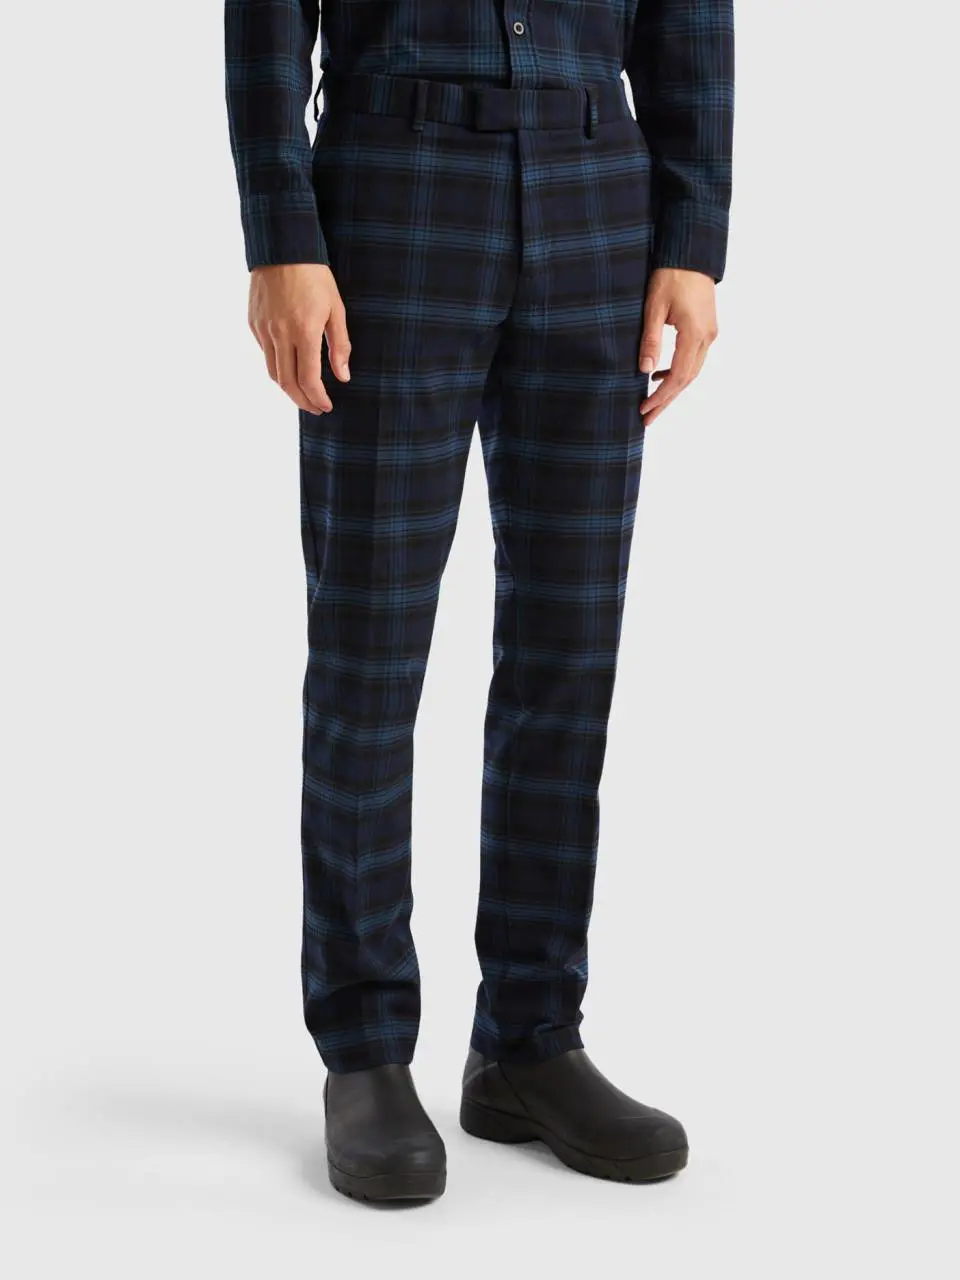 Benetton flannel tartan trousers. 1